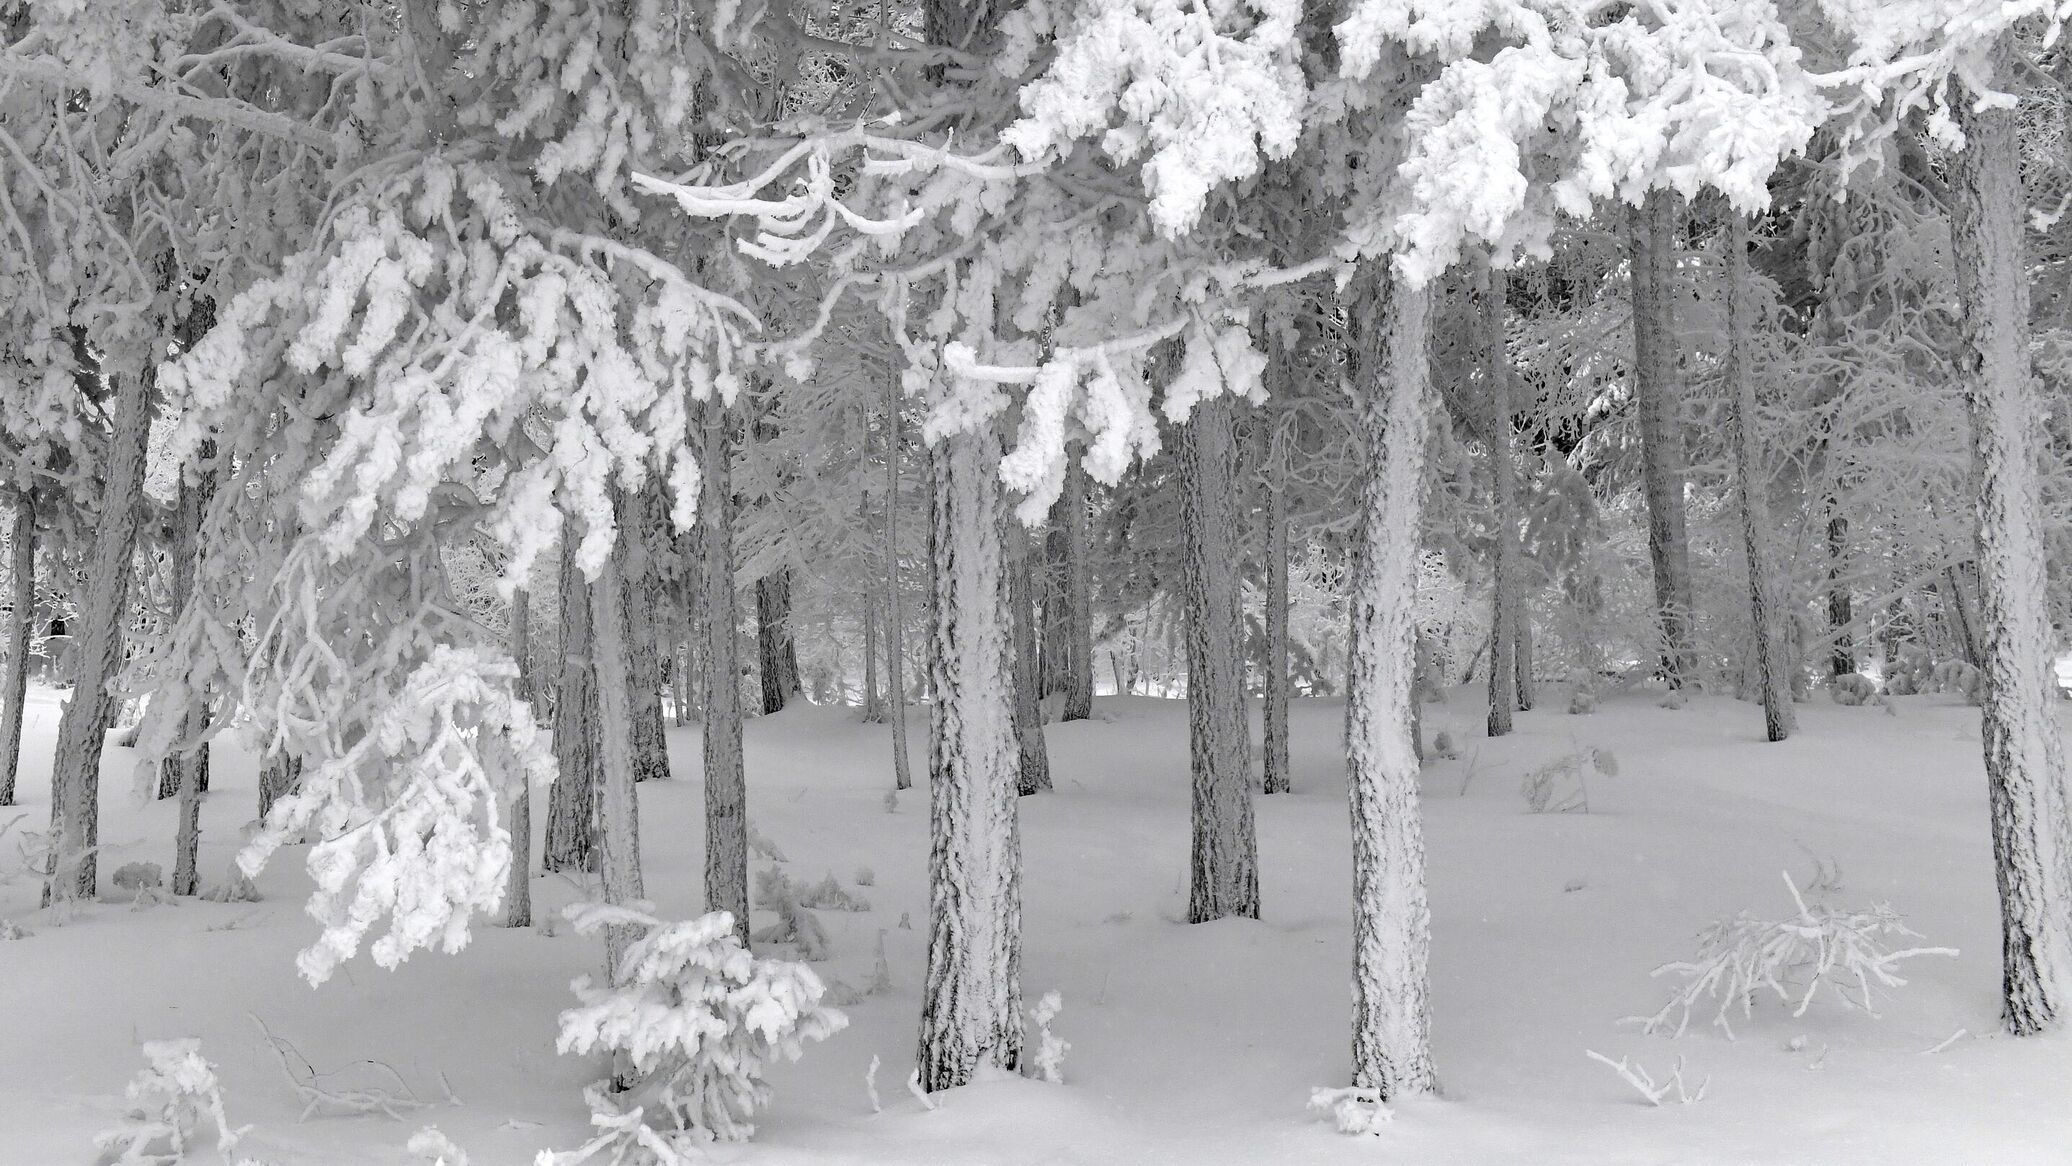 Фф и в морозном лесу навеки останусь. Лес покрытый снегом. Аномальные Морозы в январе 2017. Покрыто снегом синонимы. Красноярцы в сугробе на Столбах в Мороз.